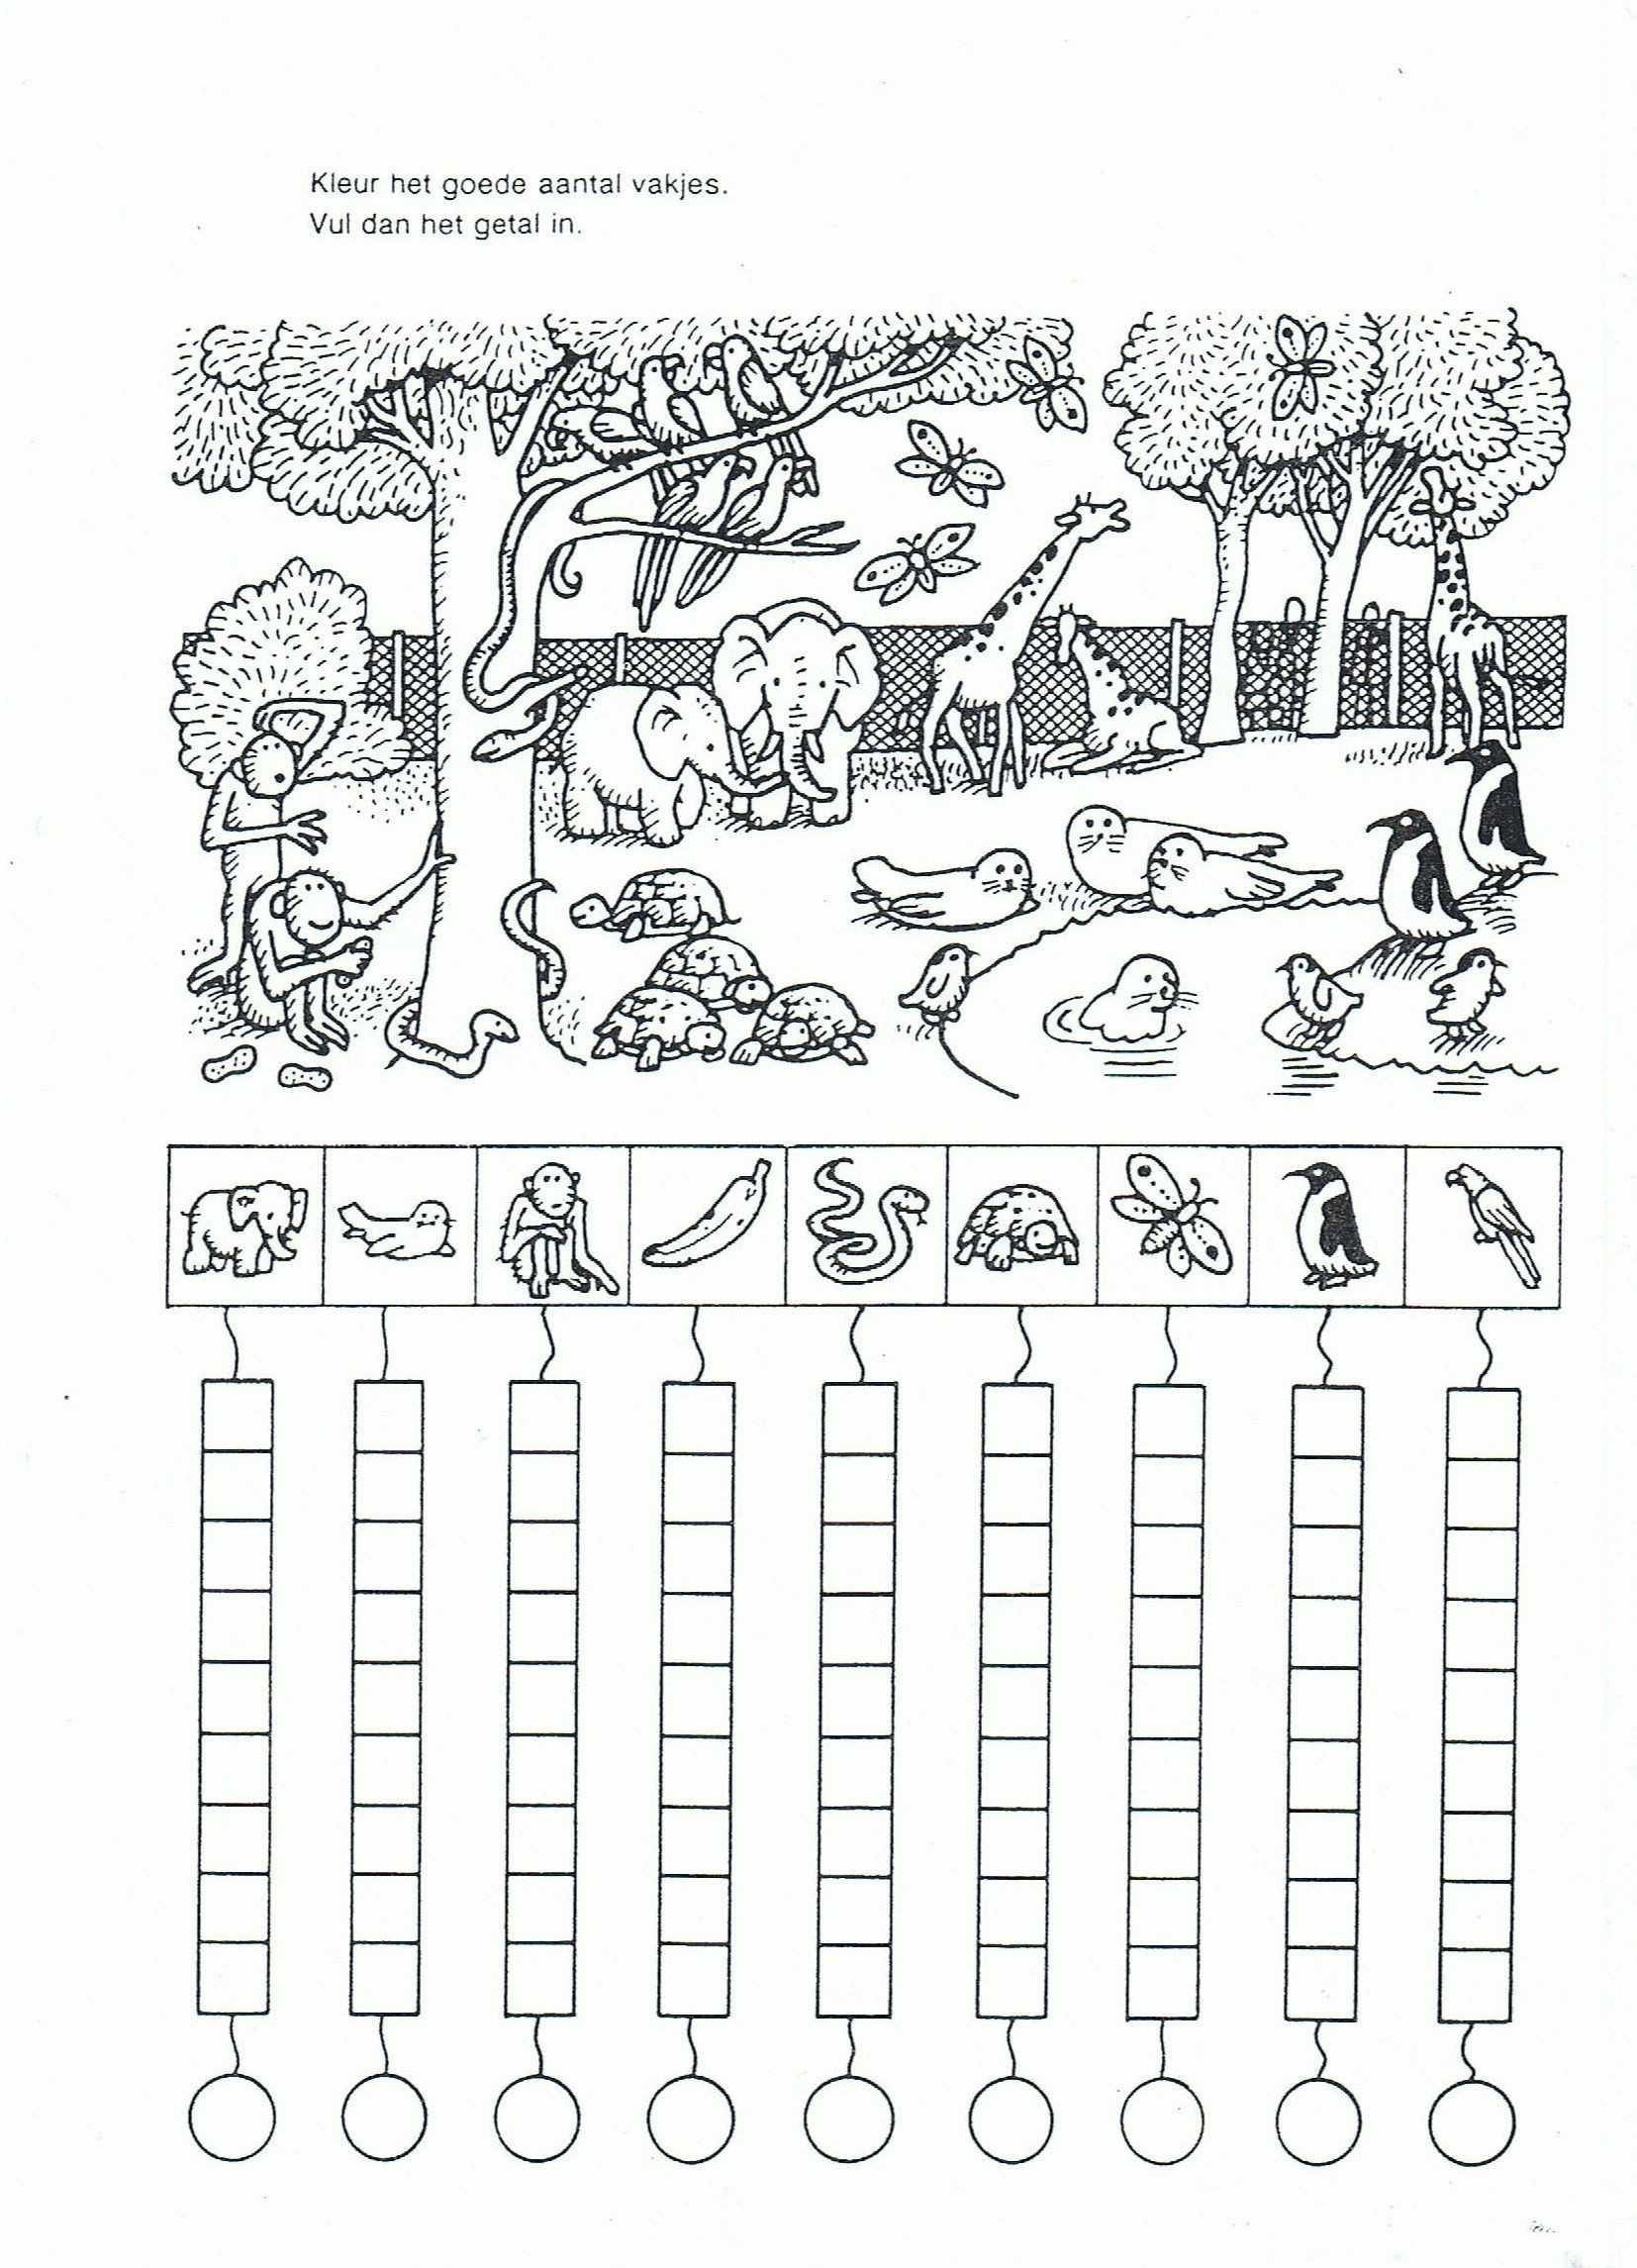 Art History Worksheets Pdf together with Presidents Day Math Worksheets for Kindergarten Valid Us Grade 2